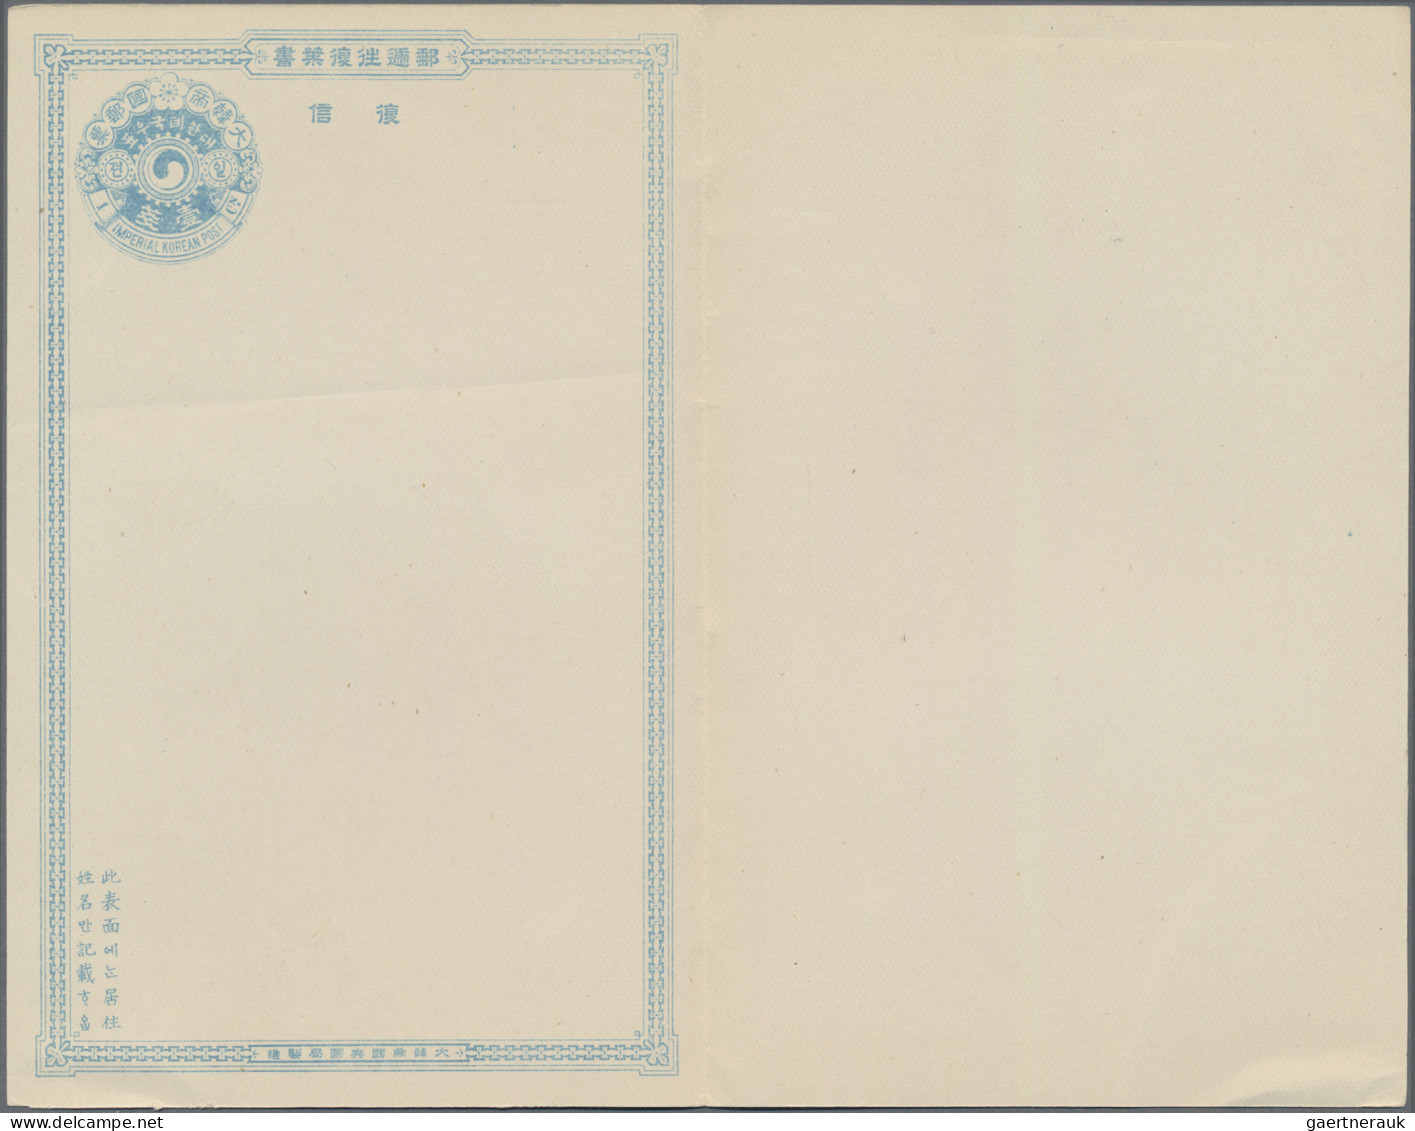 Krorea - Postal Stationary: 1900/01, Reply Card 1 Ch.+1 Ch., Single Card 1 Ch. A - Corea (...-1945)